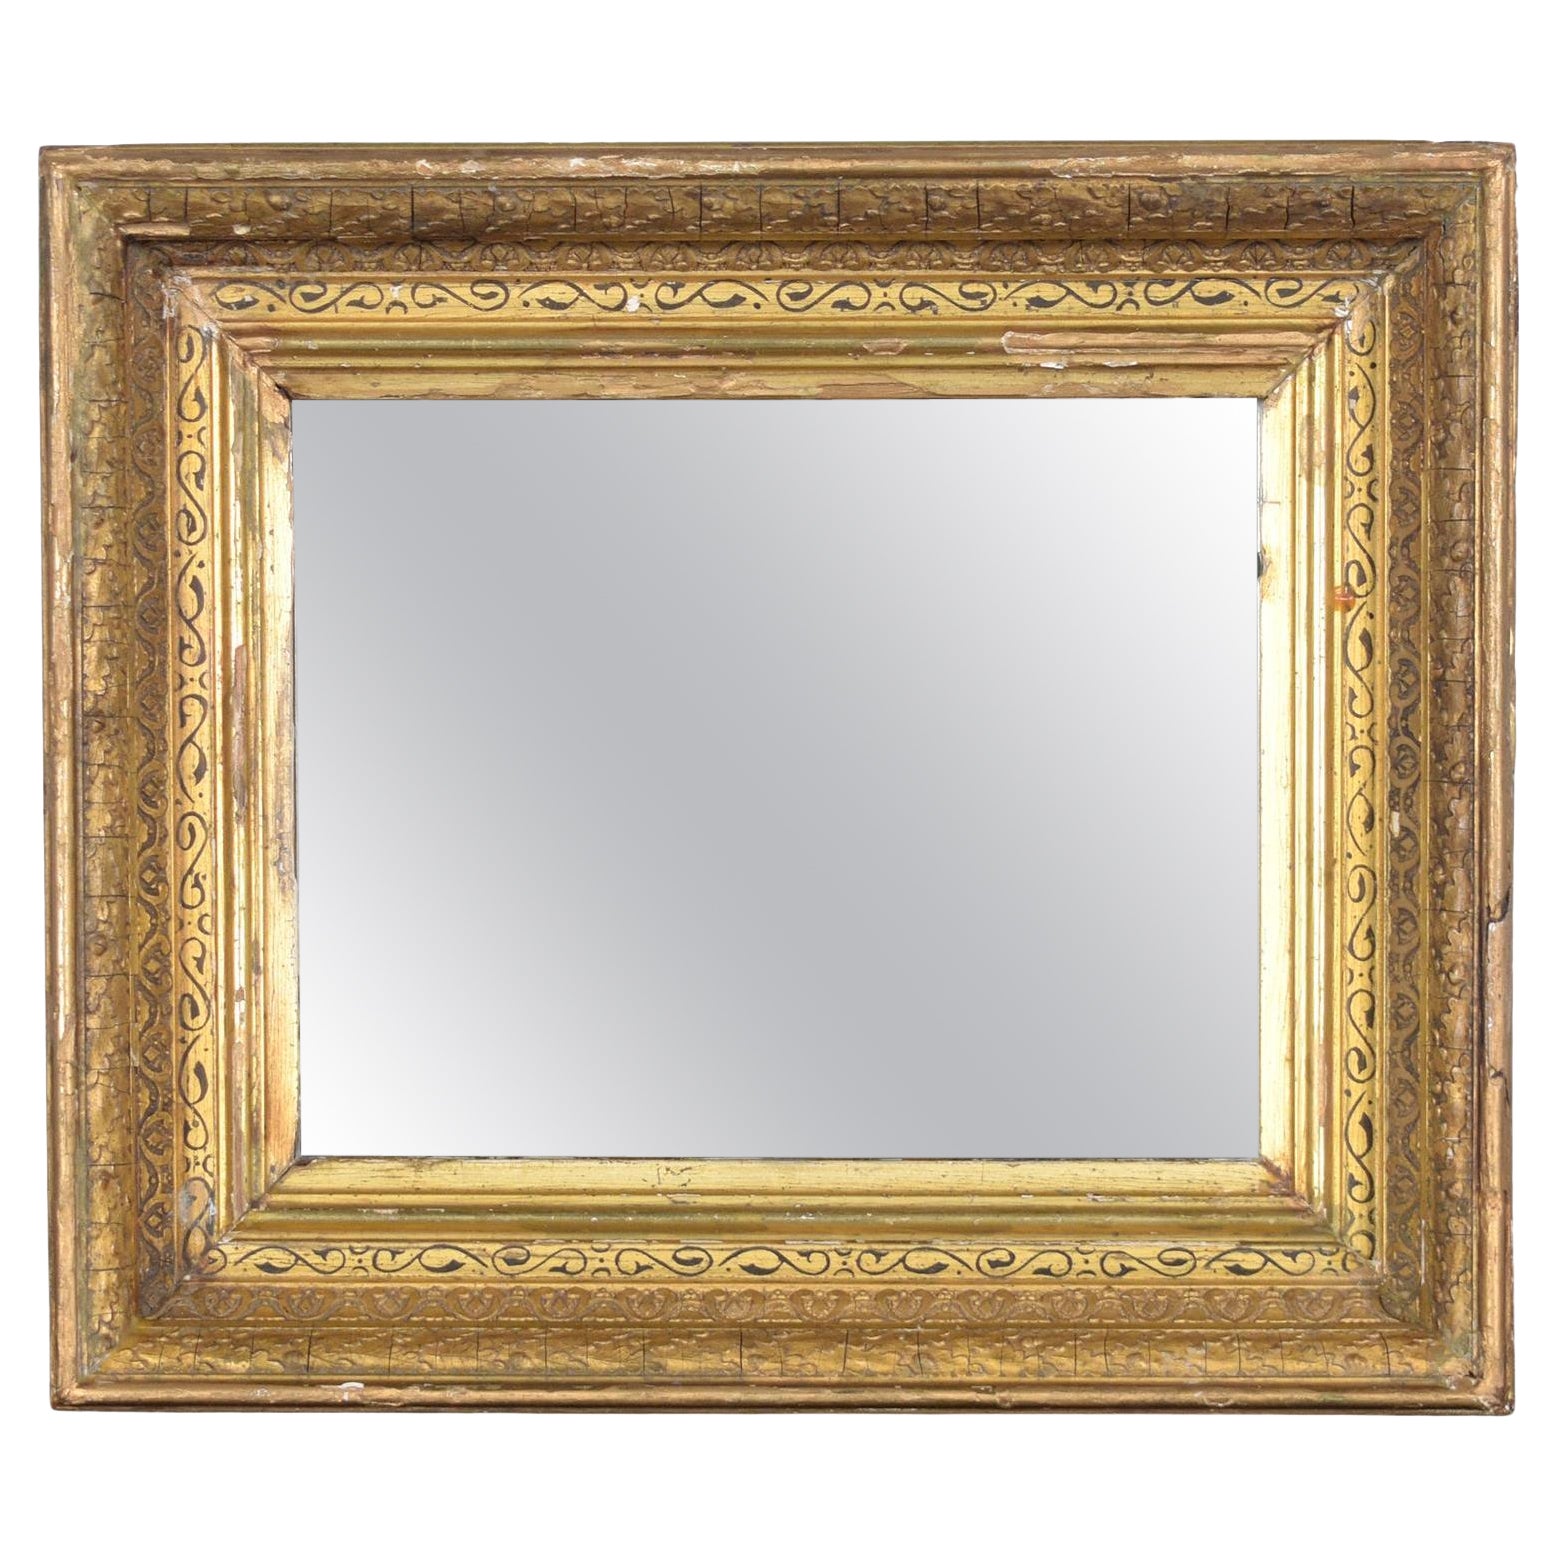 Antique Mirror français du 19ème siècle : Elegance restaurée avec une finition dorée à l'eau